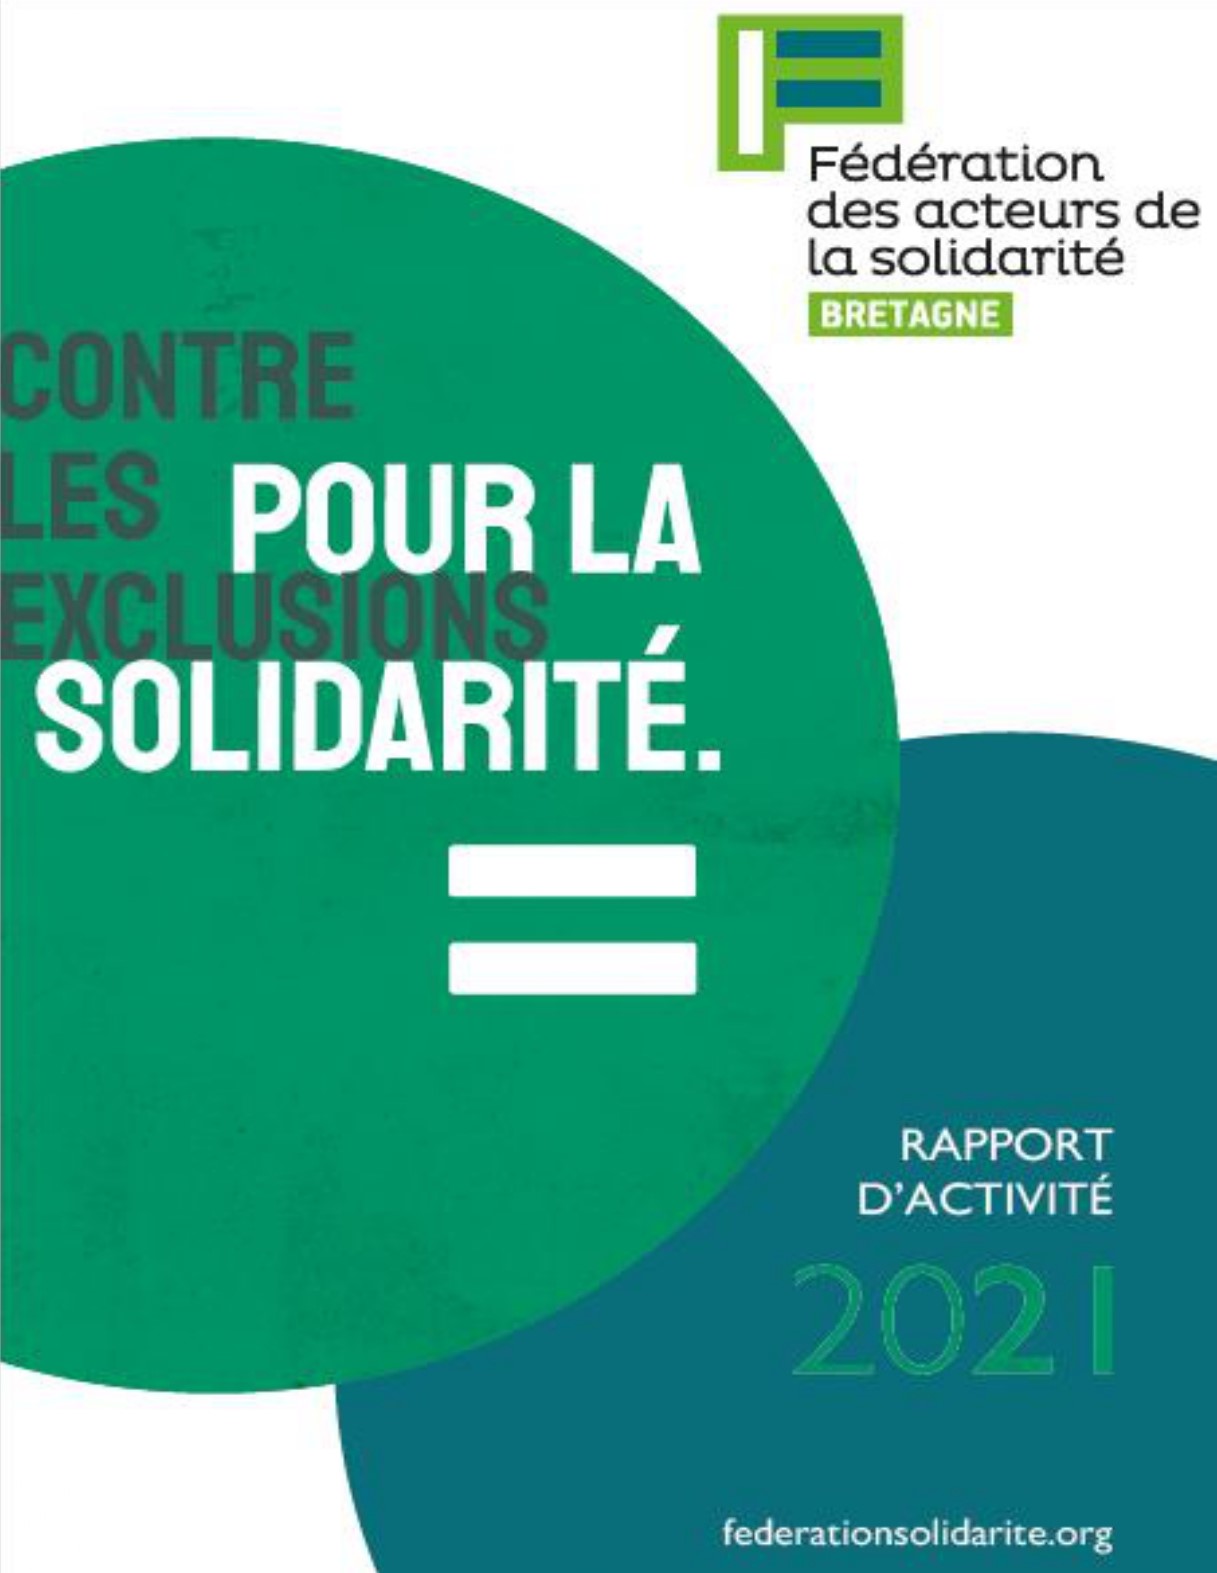 Rapport d'activité 2021 FAS Bretagne